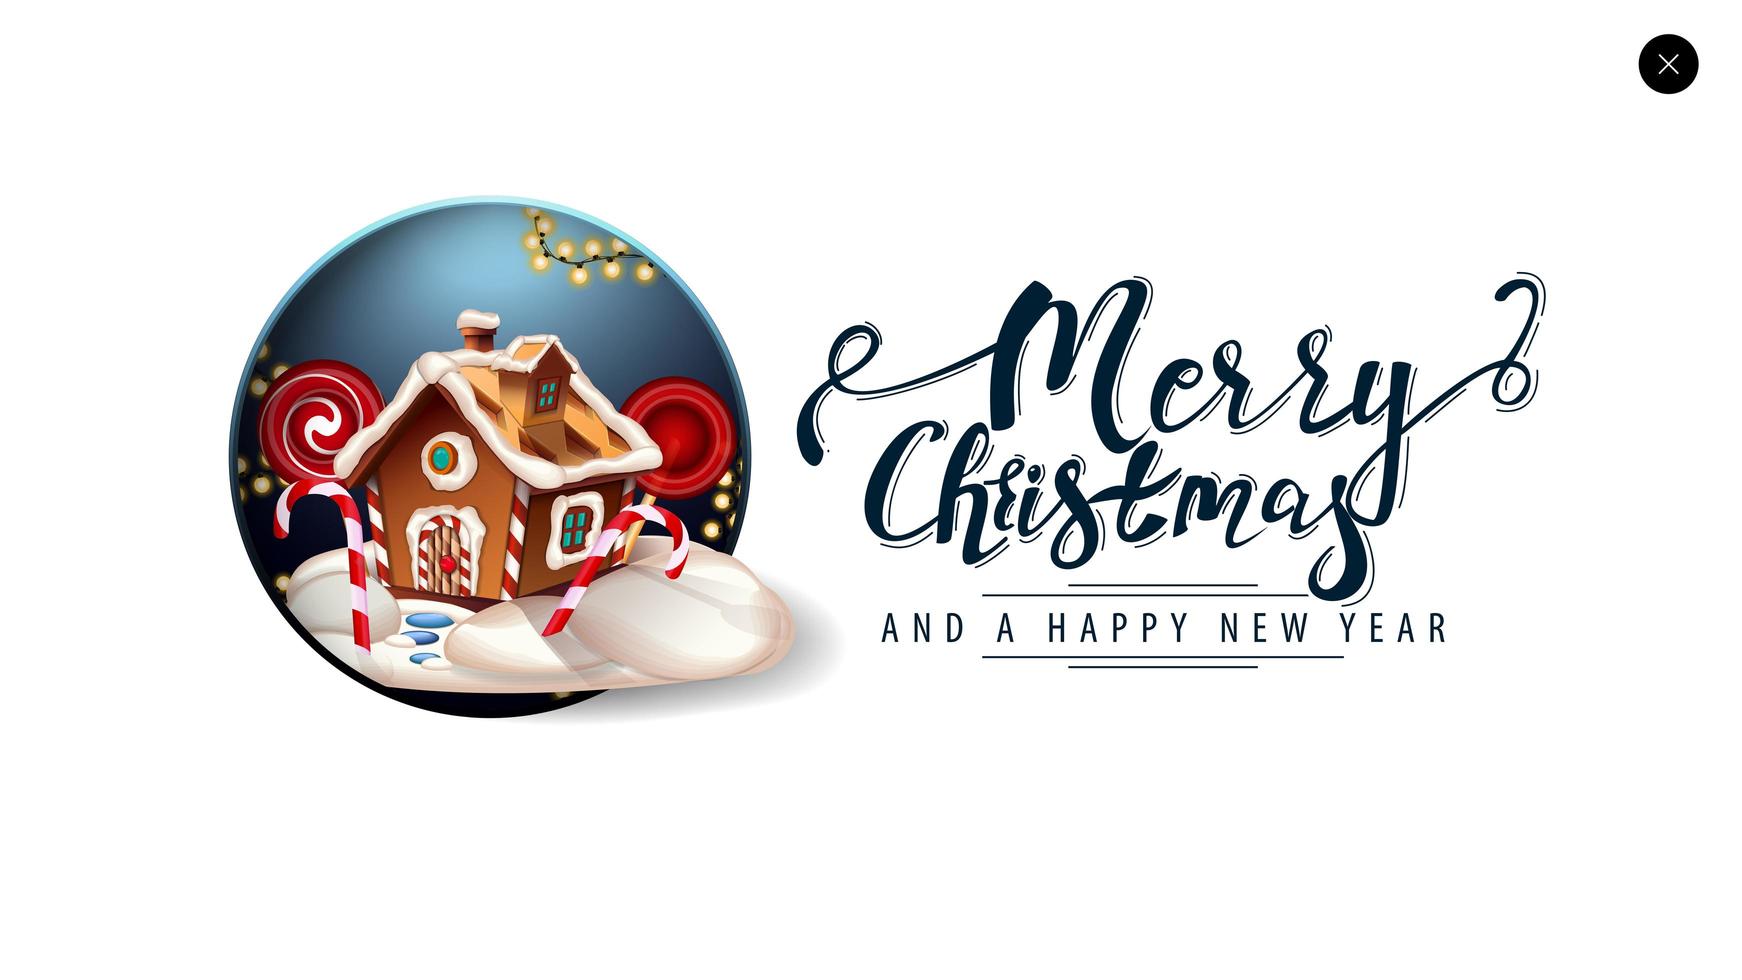 vrolijk kerstfeest, witte kaart voor website in minimalistische stijl met prachtige belettering en kerst peperkoek huis vector